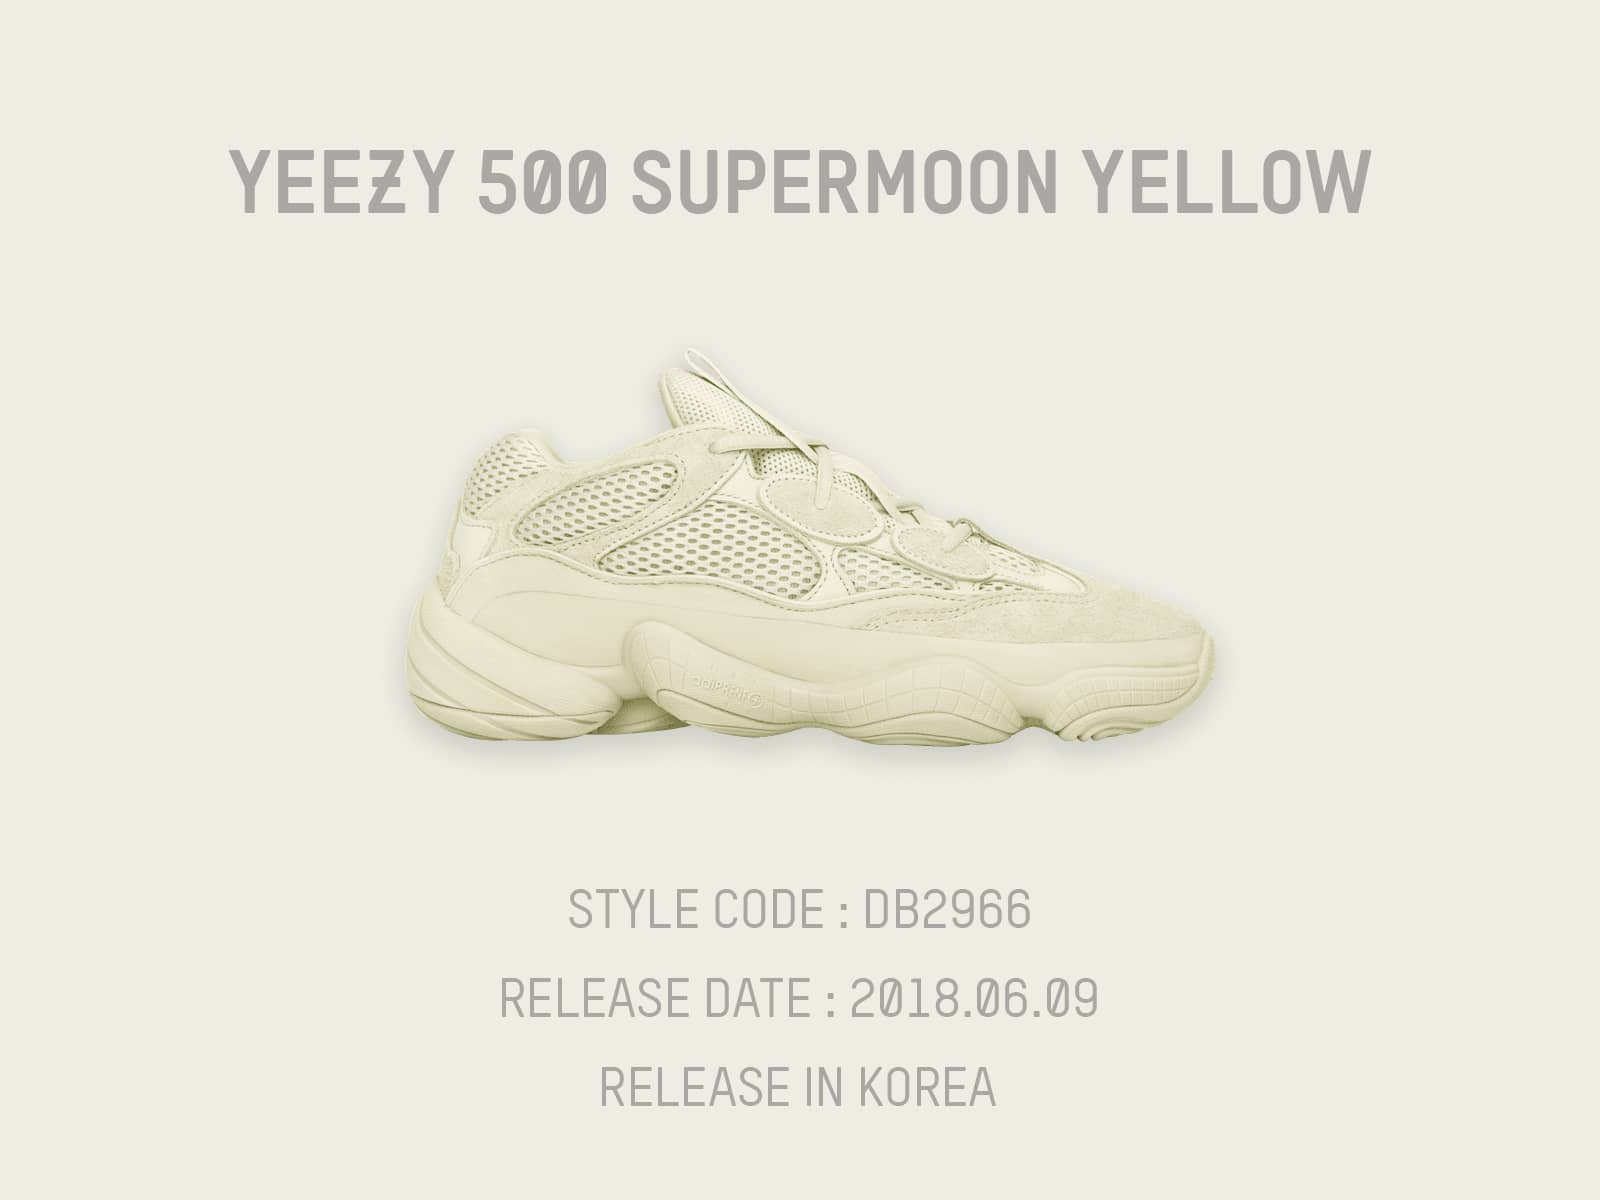 6월 9일 발매되는 아디다스 이지 500 슈퍼문 옐로우 아디다스코리아 래플 정보(Yeezy 500 Supermoon Yellow Release Raffle Info Korea) 20